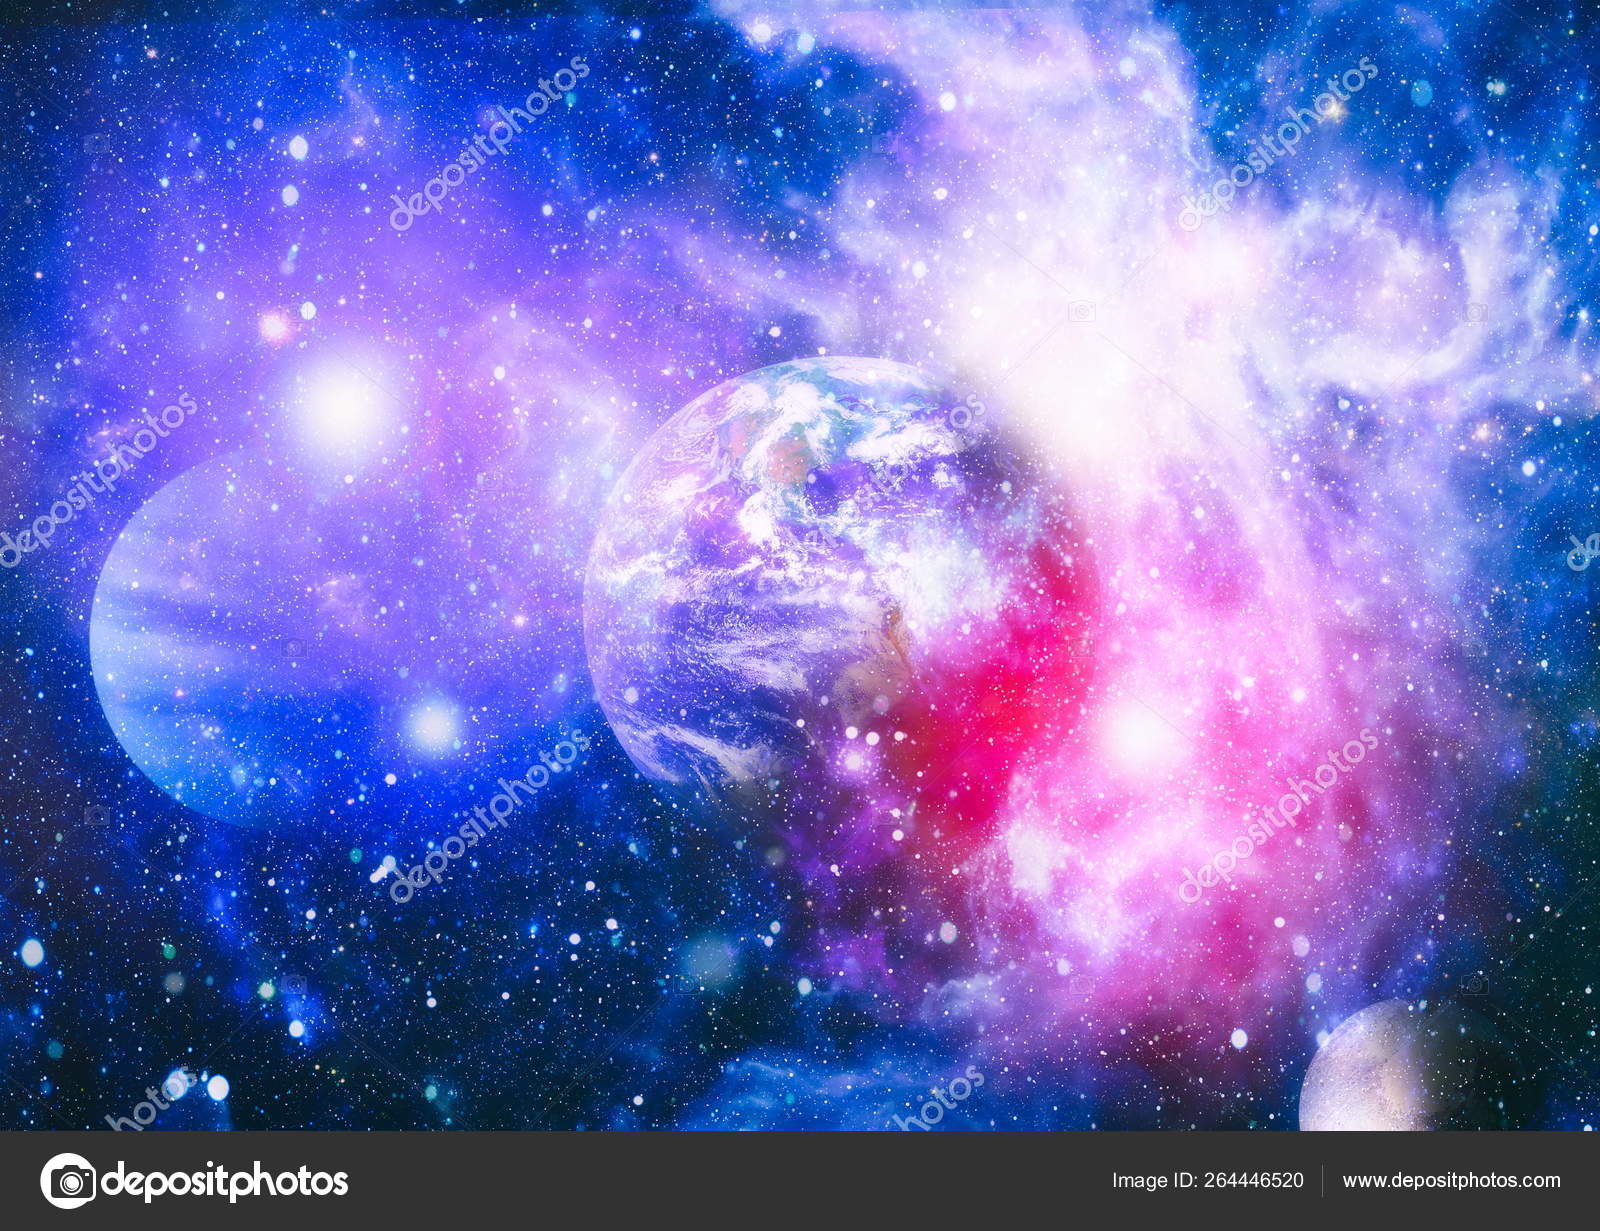 宇宙探査の美しさを示す宇宙空間の惑星や星や銀河です Nasaが提供する要素 ストック写真 C Maximusdn 264446520